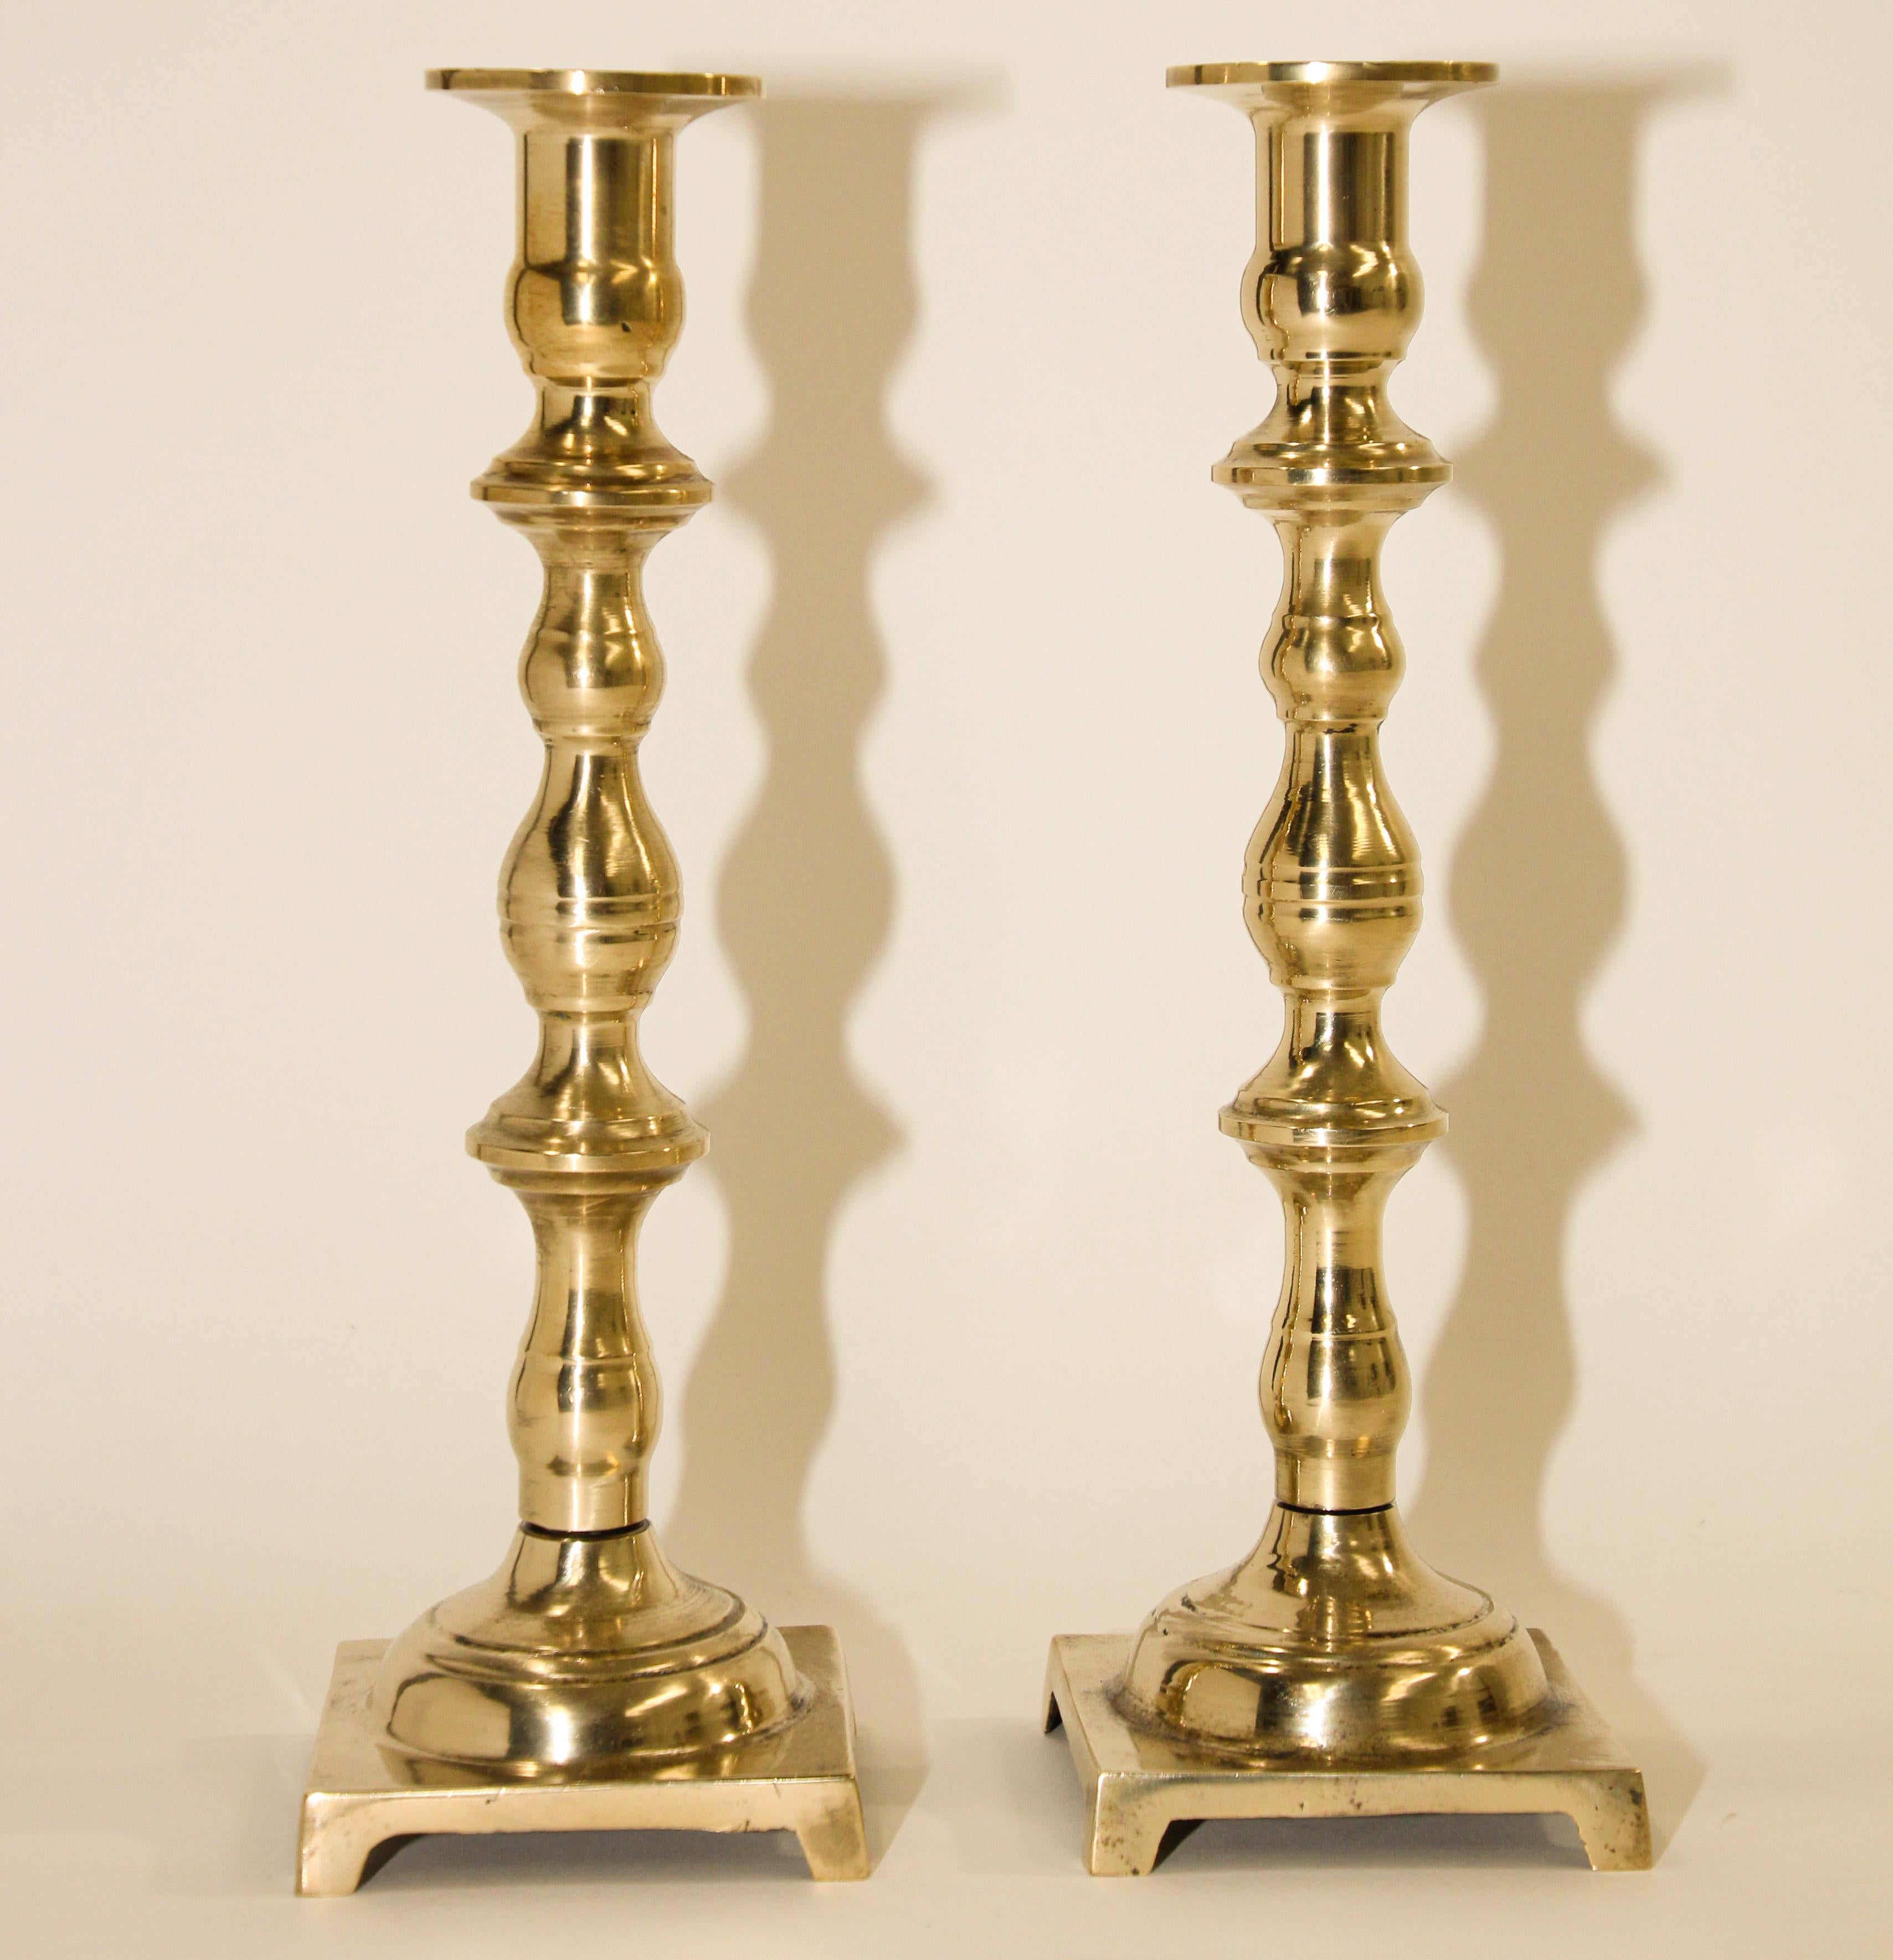 Paire de chandeliers géorgiens en laiton ancien
Une paire de chandeliers anglais en laiton massif plus inhabituelle.
19ème siècle Paire de chandeliers anglais en laiton ancien à base carrée. 
Tourné à la main, de construction très lourde, chacun